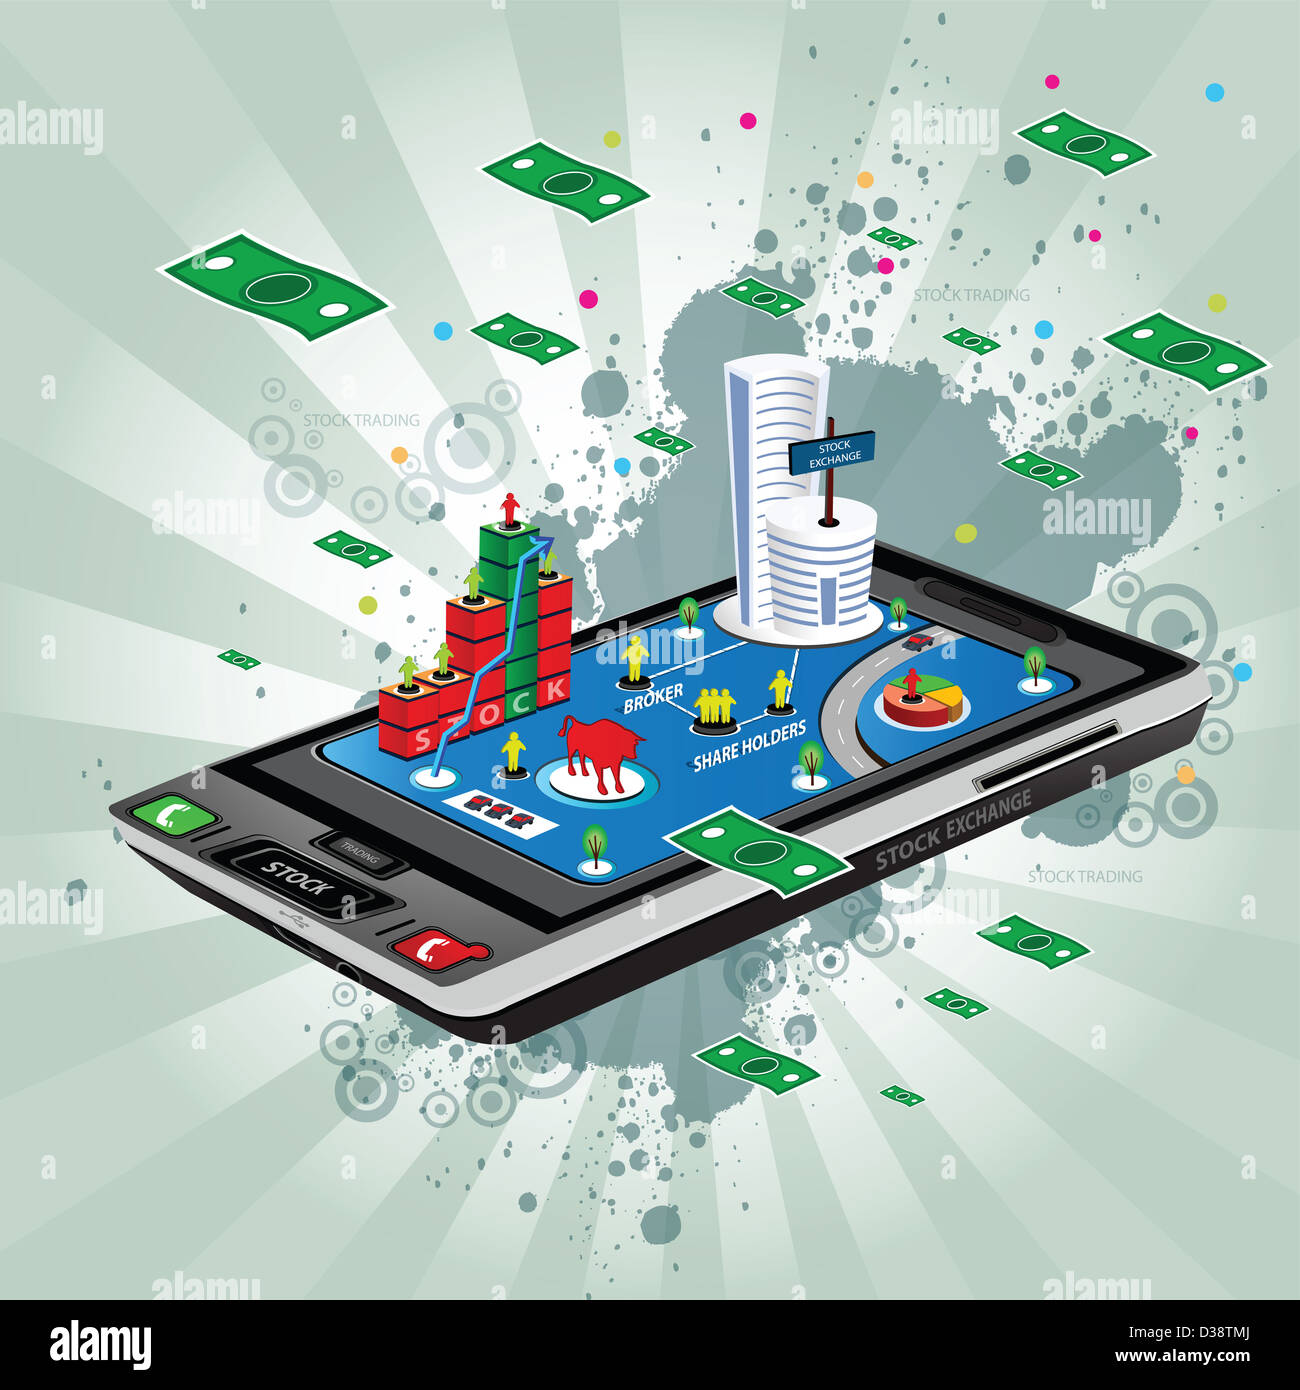 Représentation d'illustration montrant l'utilisation d'un téléphone mobile en stock trading Banque D'Images